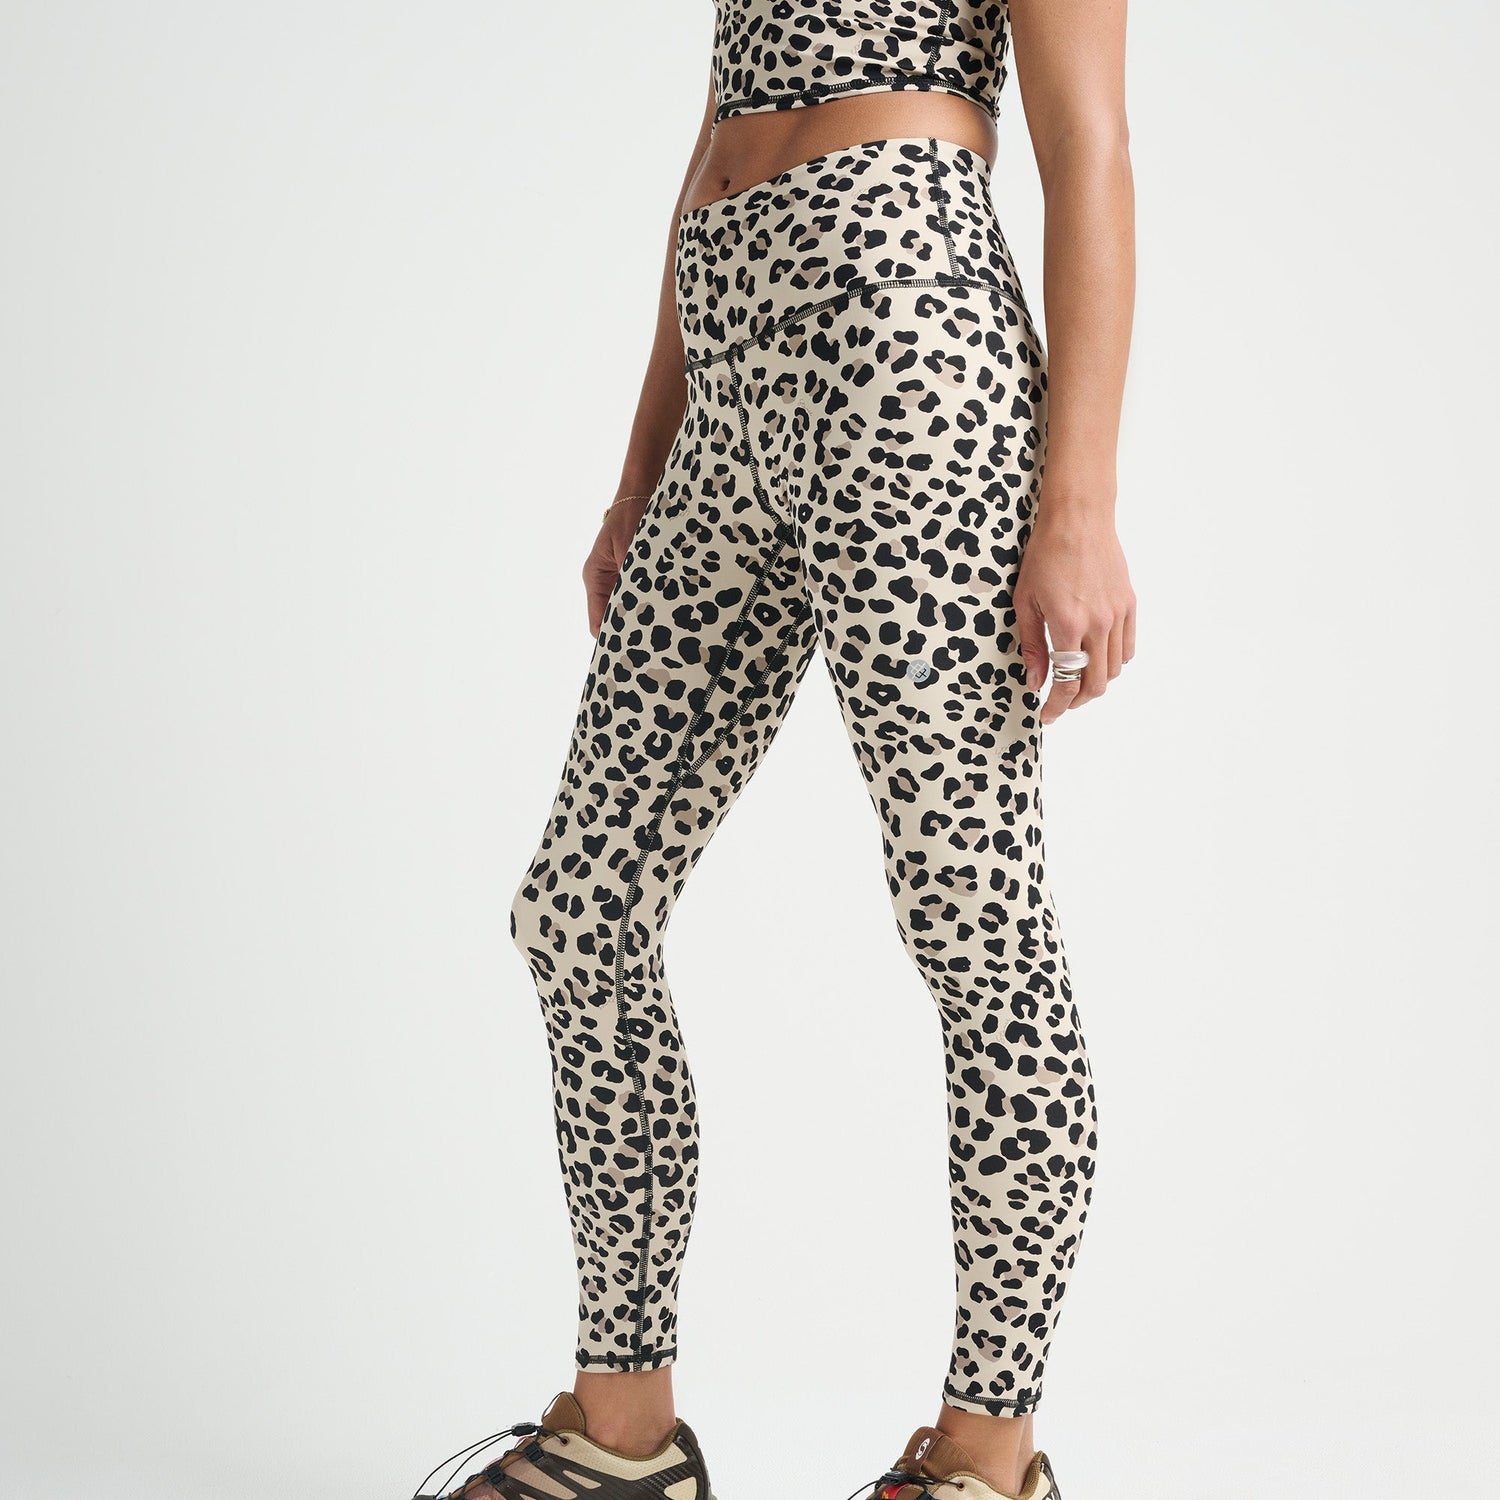 Legging femme léopard Happenings de Stance | Modèle